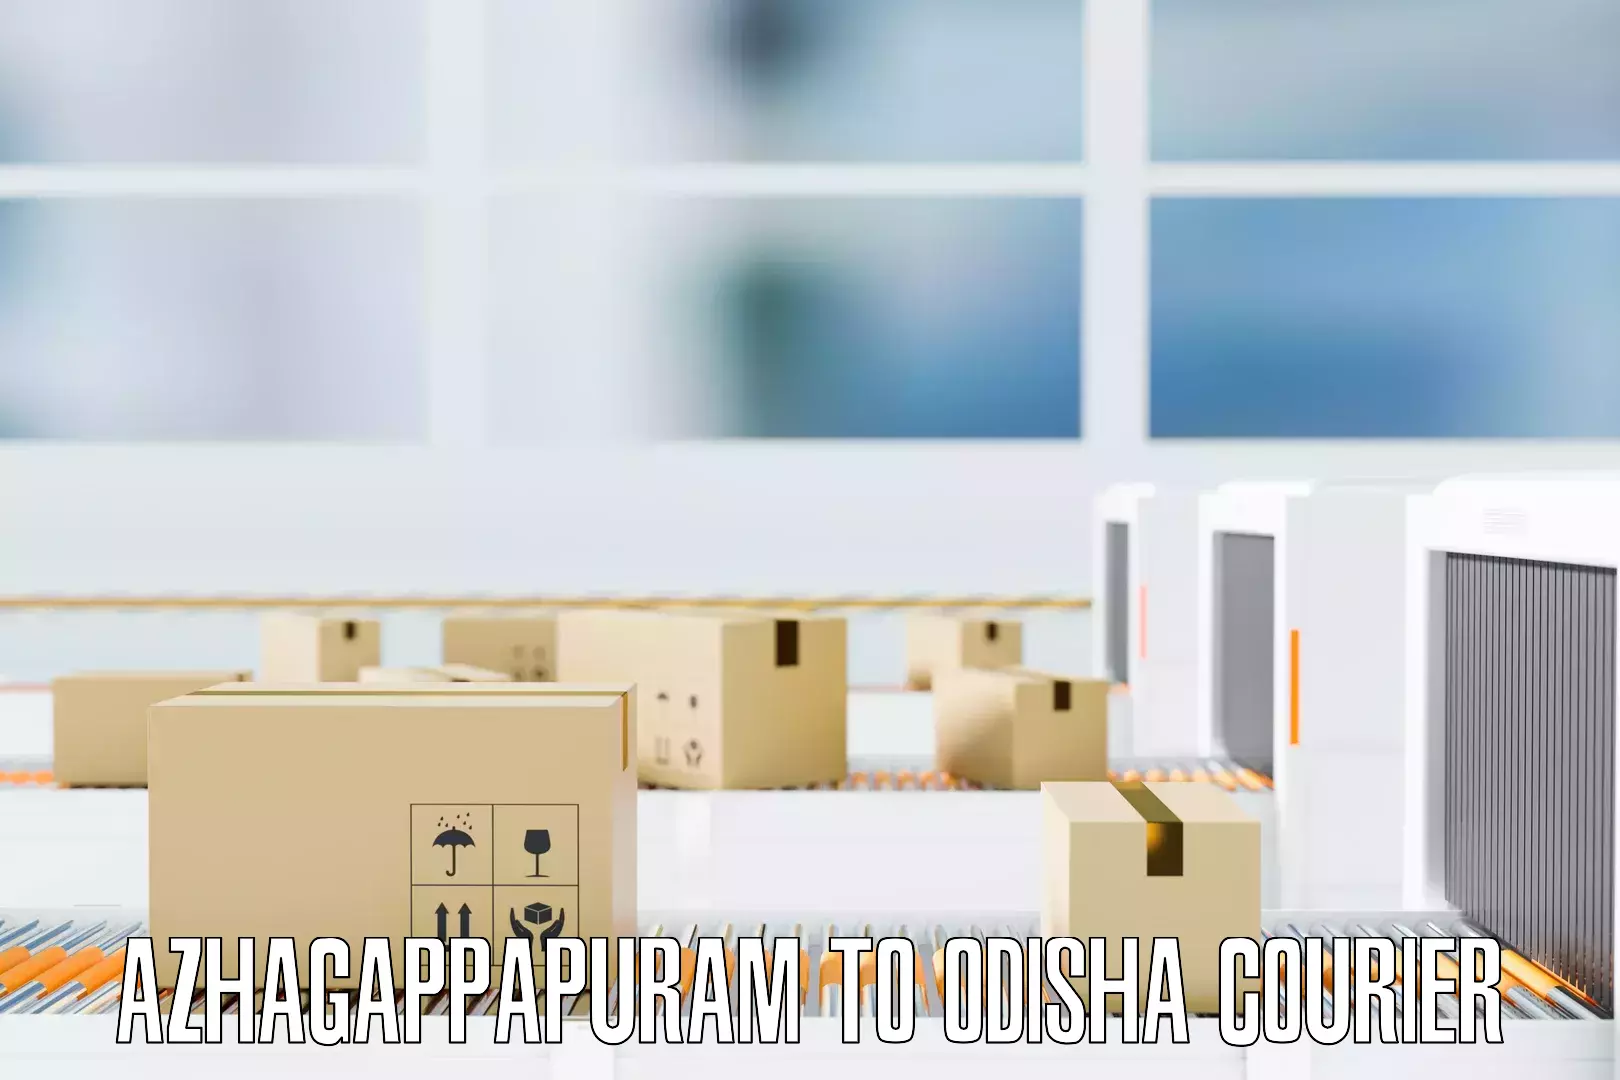 Furniture shipping services Azhagappapuram to Odisha